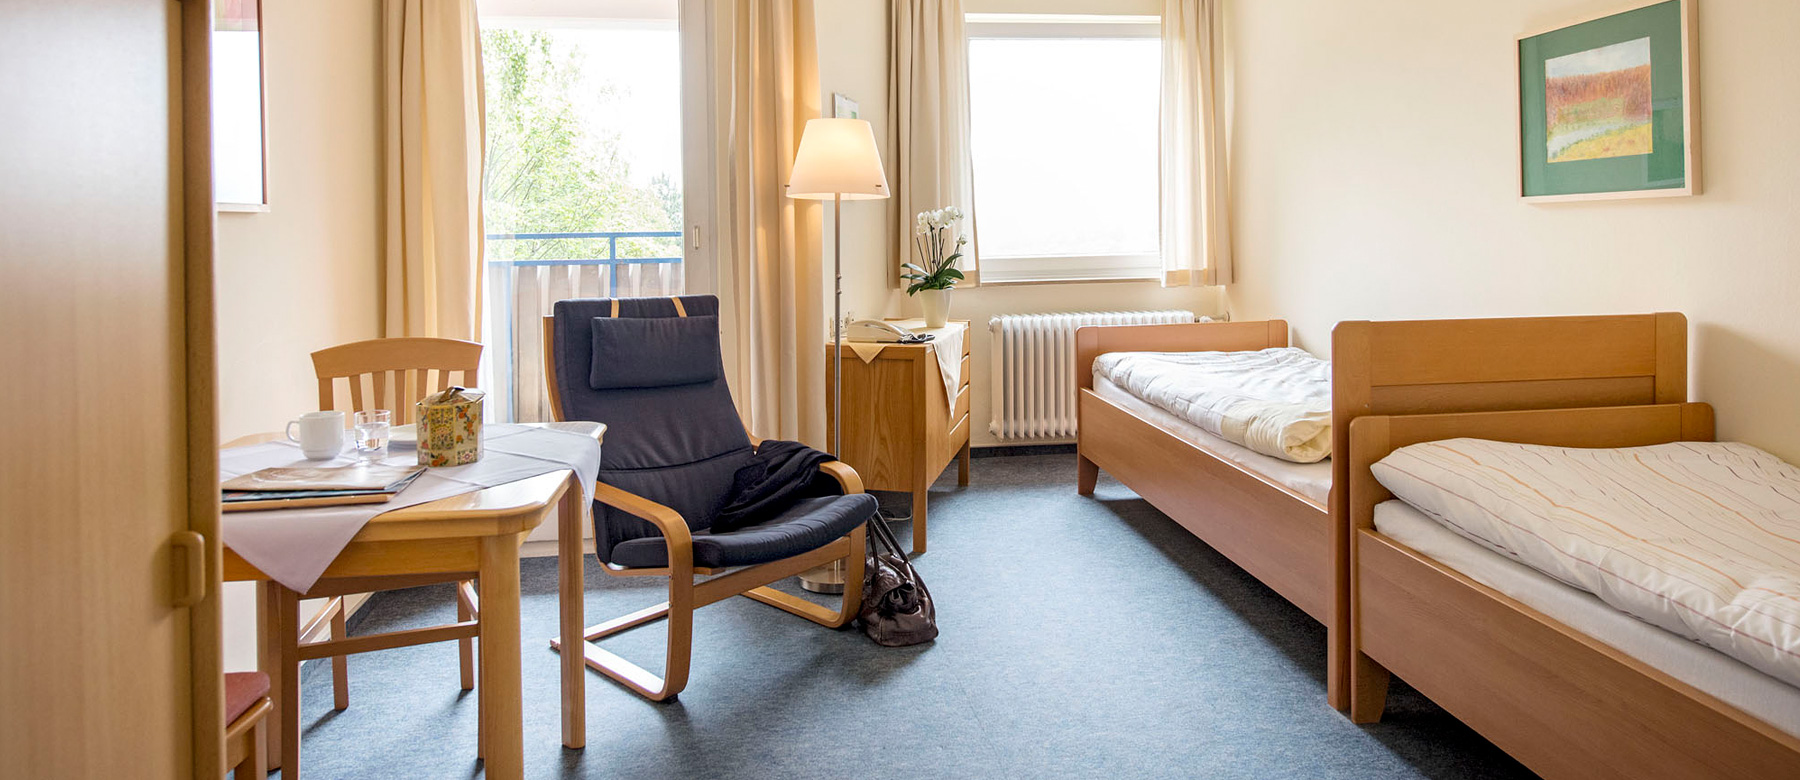 Die Gästeappartements bieten Angehörigen und Patient*innen Übernachtungsmöglichkeiten auf dem Krankenhausgelände.